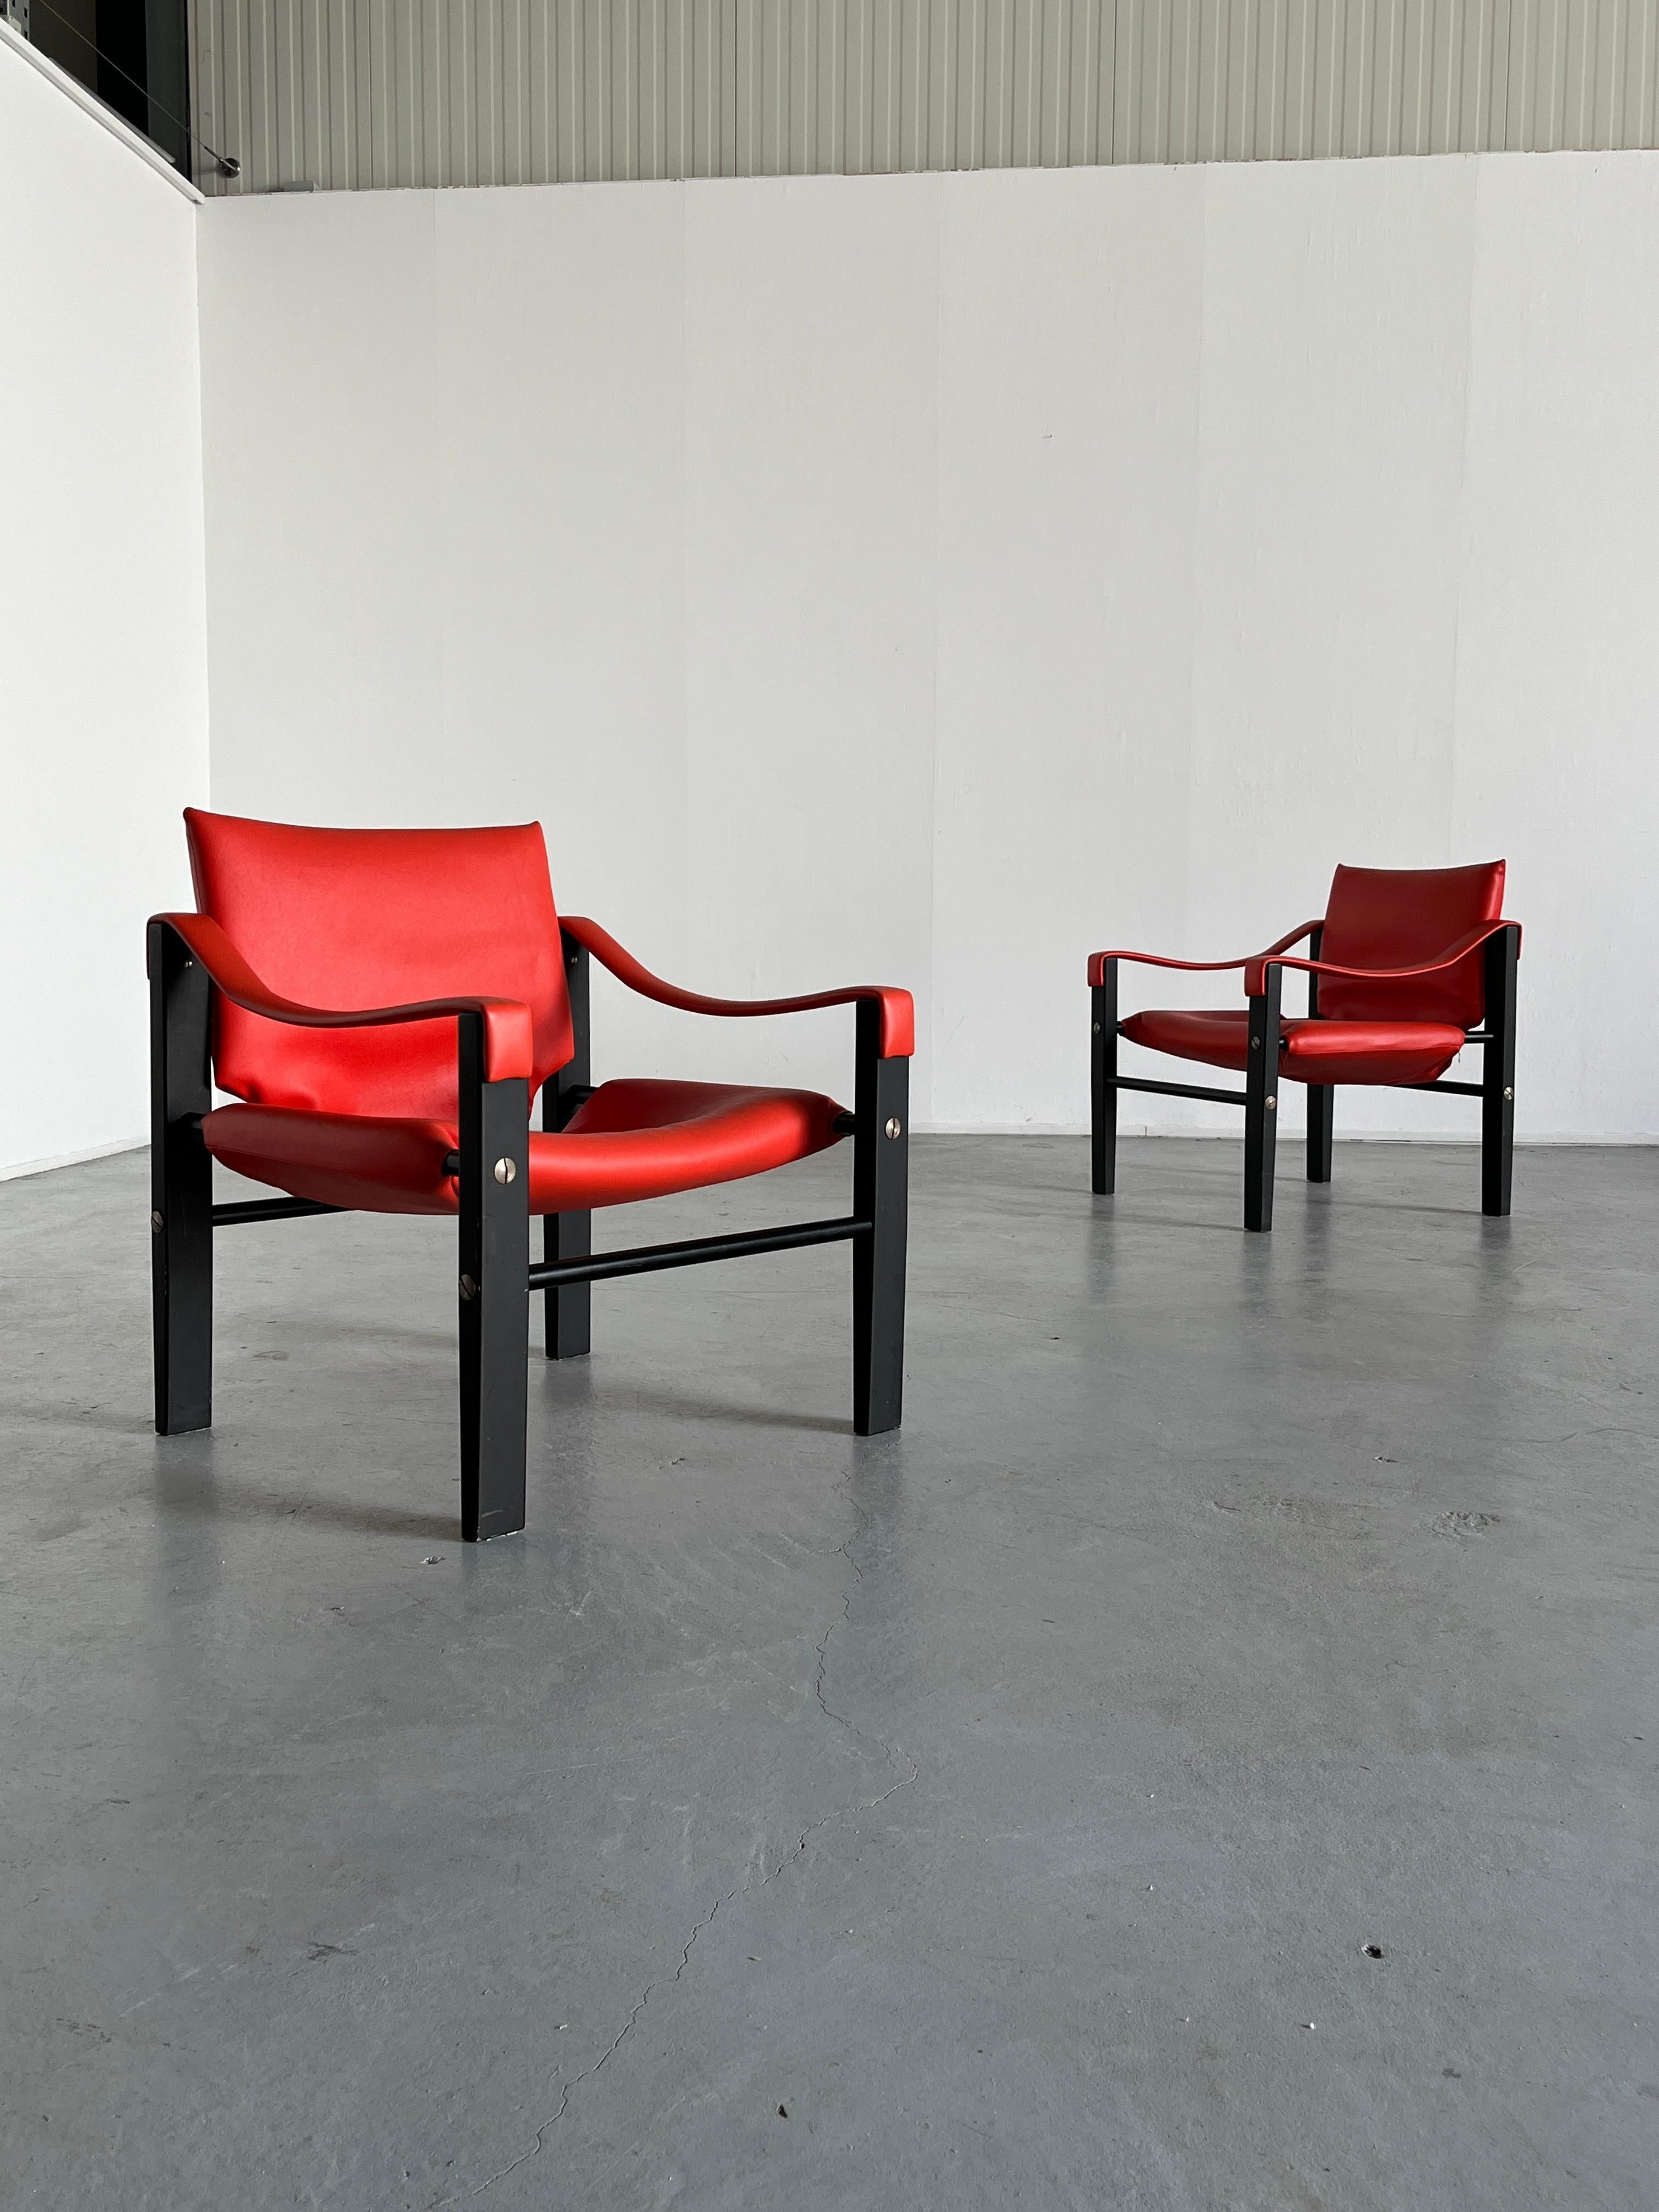 Seltene Ausgabe der von Maurice Burke für Arkana Furniture entworfenen Safari-Stühle in rotem Kunstleder oder Vinyl mit einem Gestell aus farbigem Teakholz, Kufen aus Metallrohr und Schrauben aus Stahl. Produktion aus den 1960er Jahren, sowohl